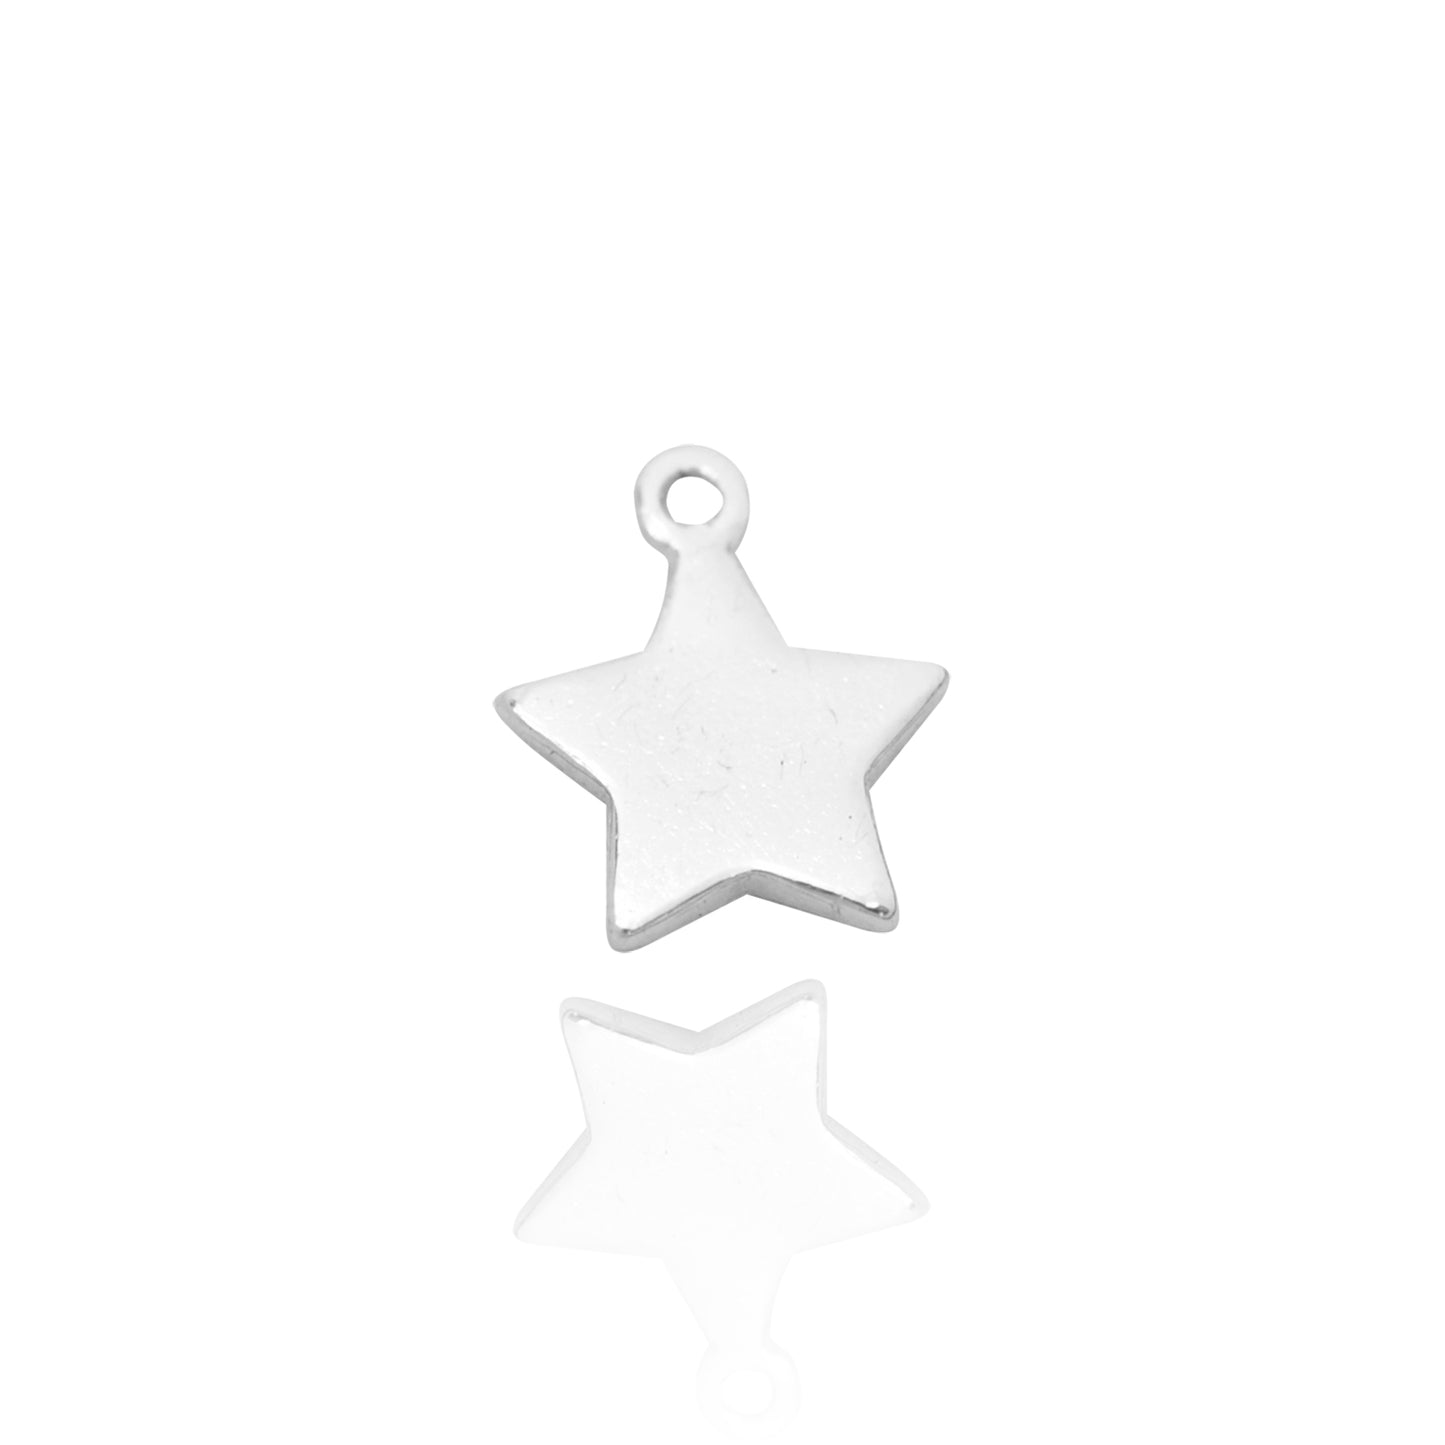 Mini star pendant / 925 silver / 7 mm